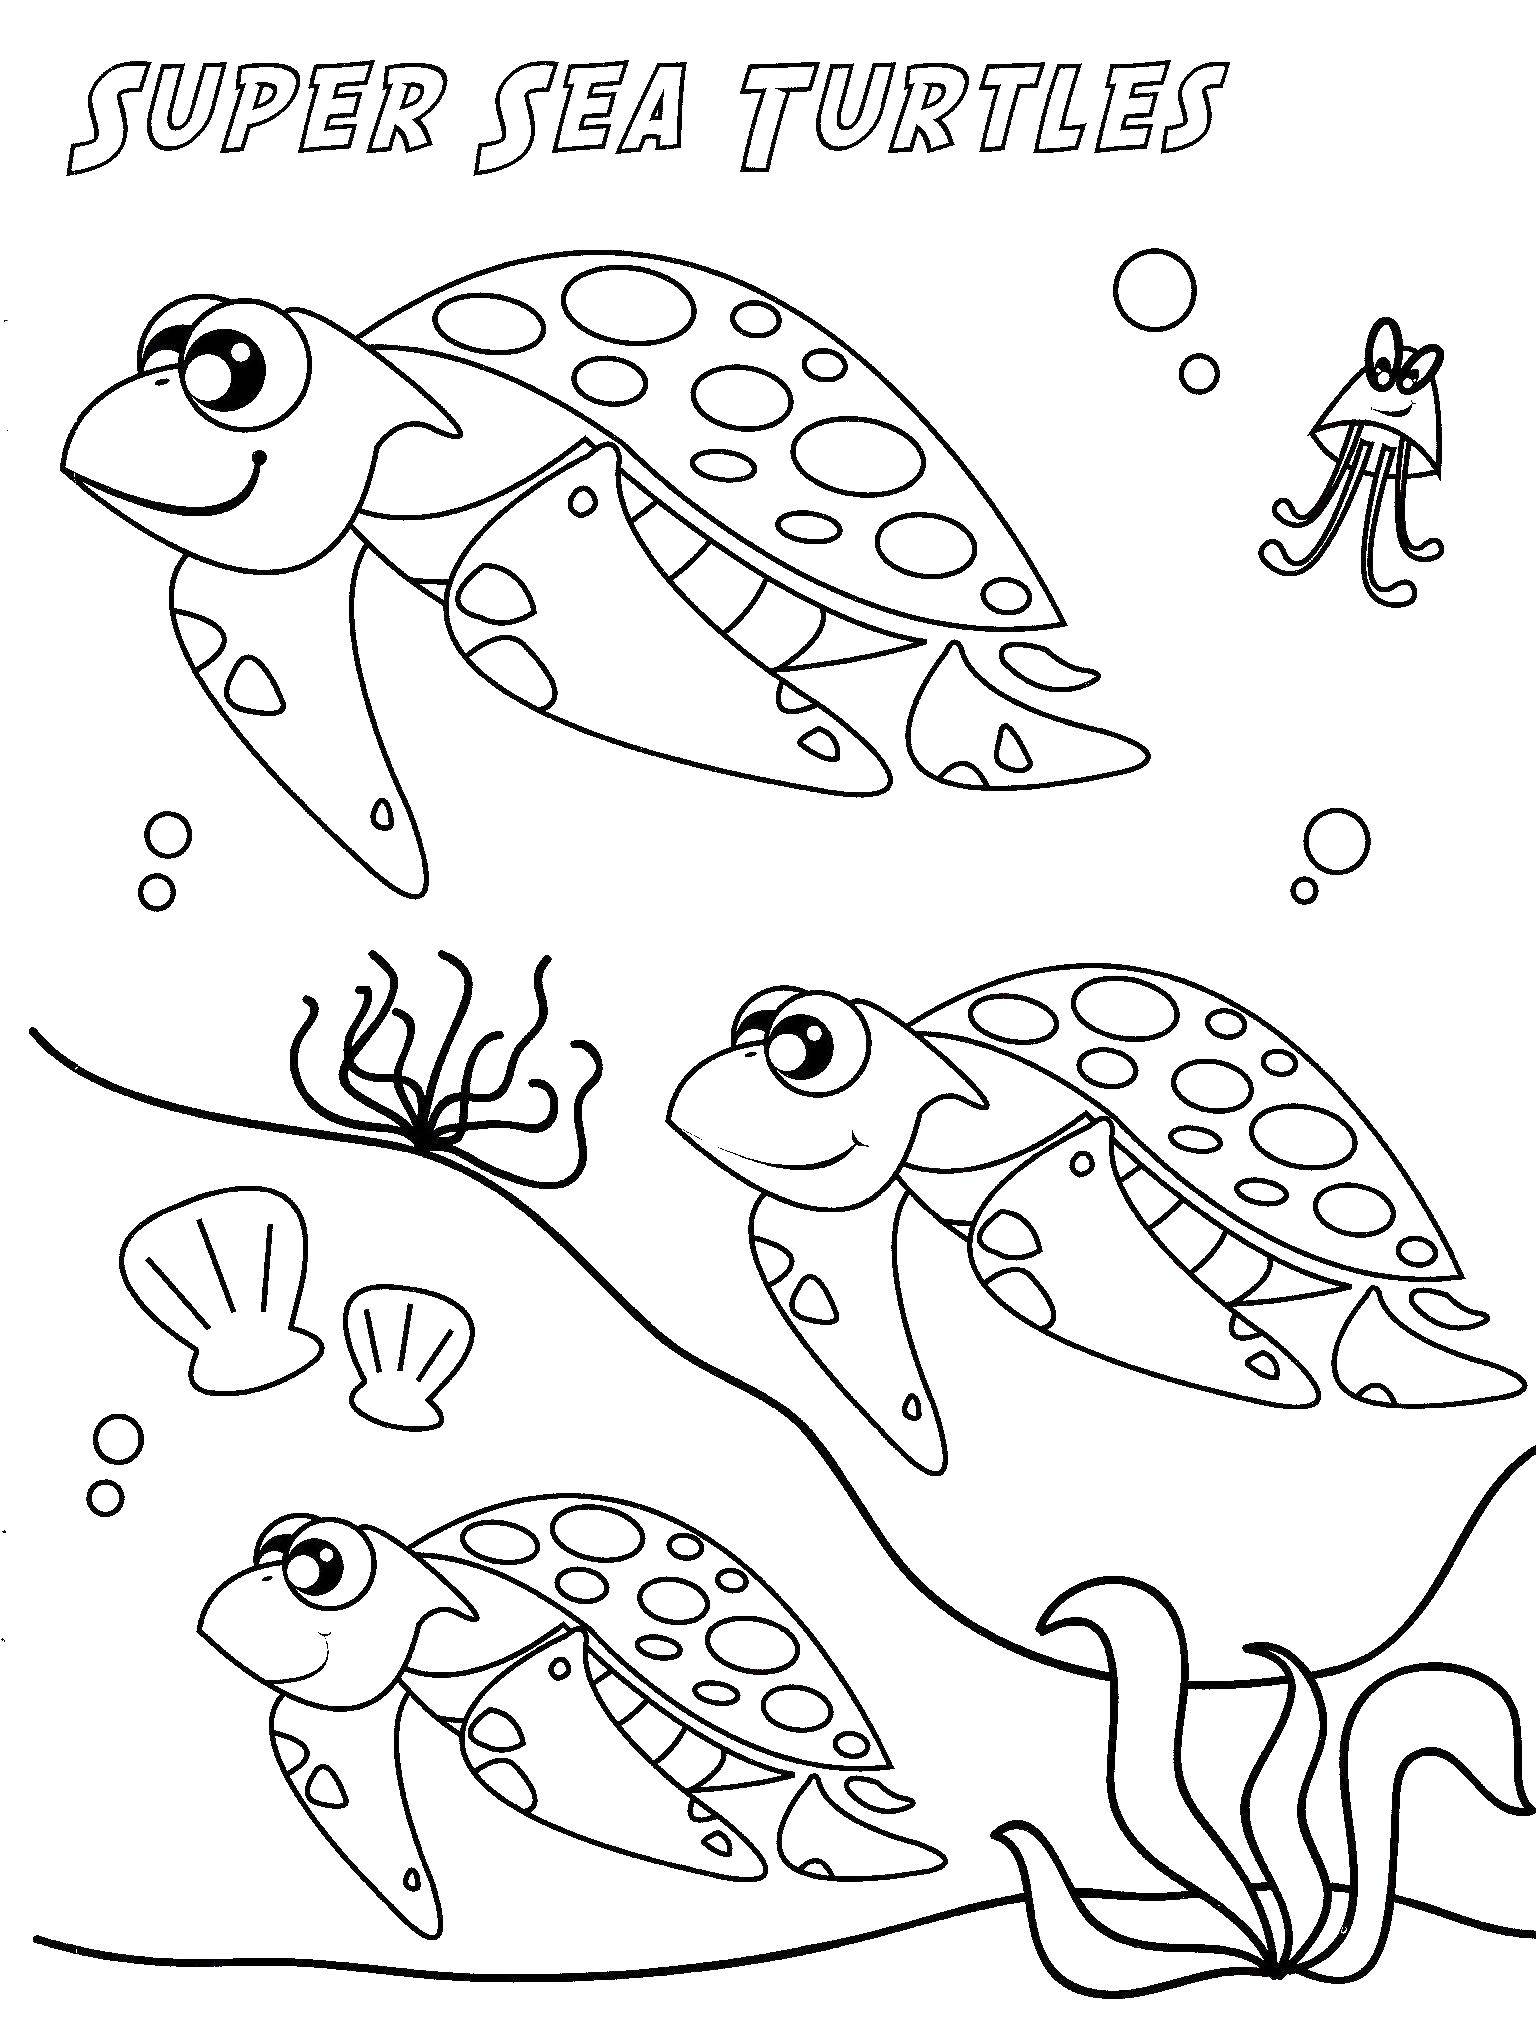 Название: Раскраска Супер морские черепахи. Категория: Морская черепаха. Теги: Рептилия, черепаха.